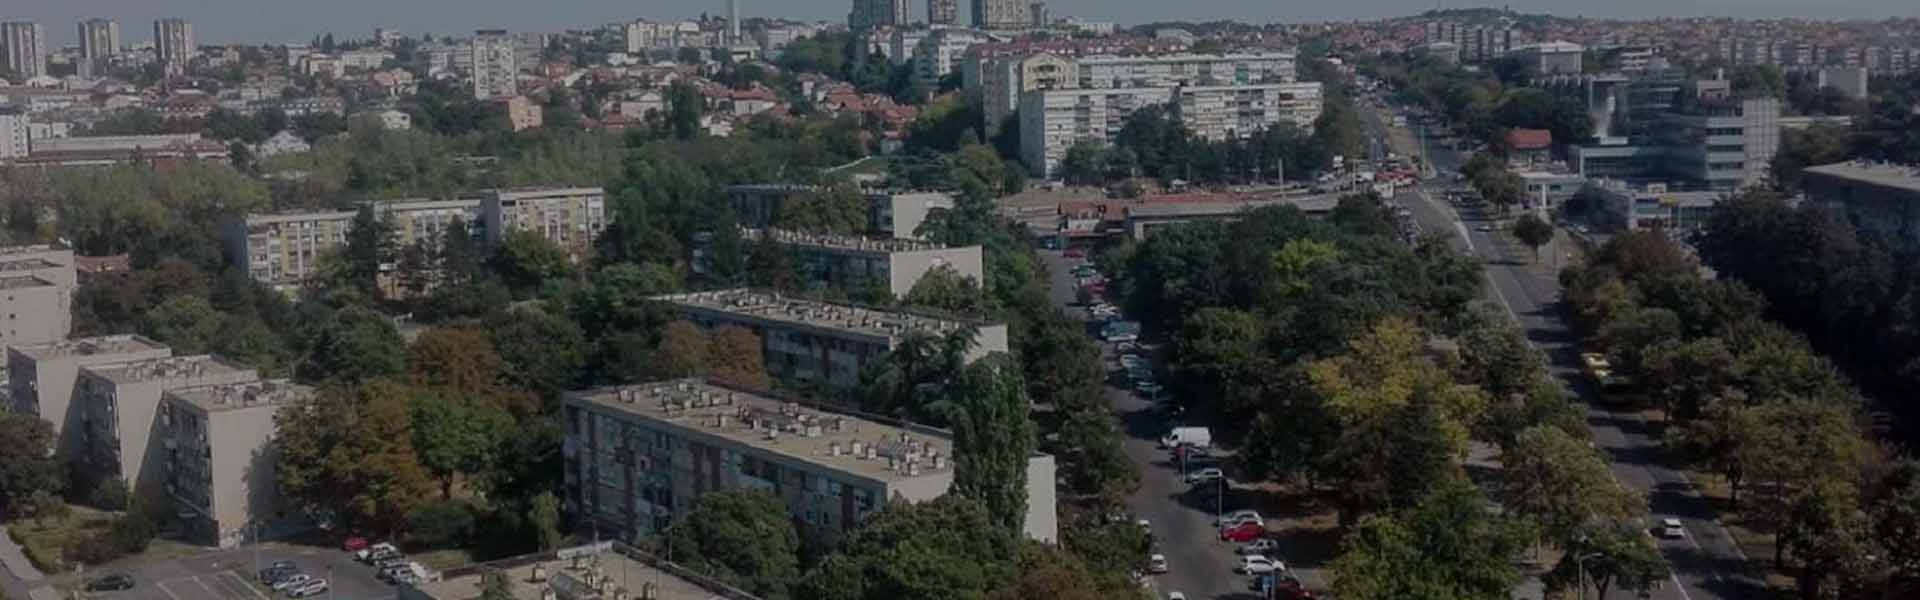 Rent a car Sumice | Belgrade, Serbia